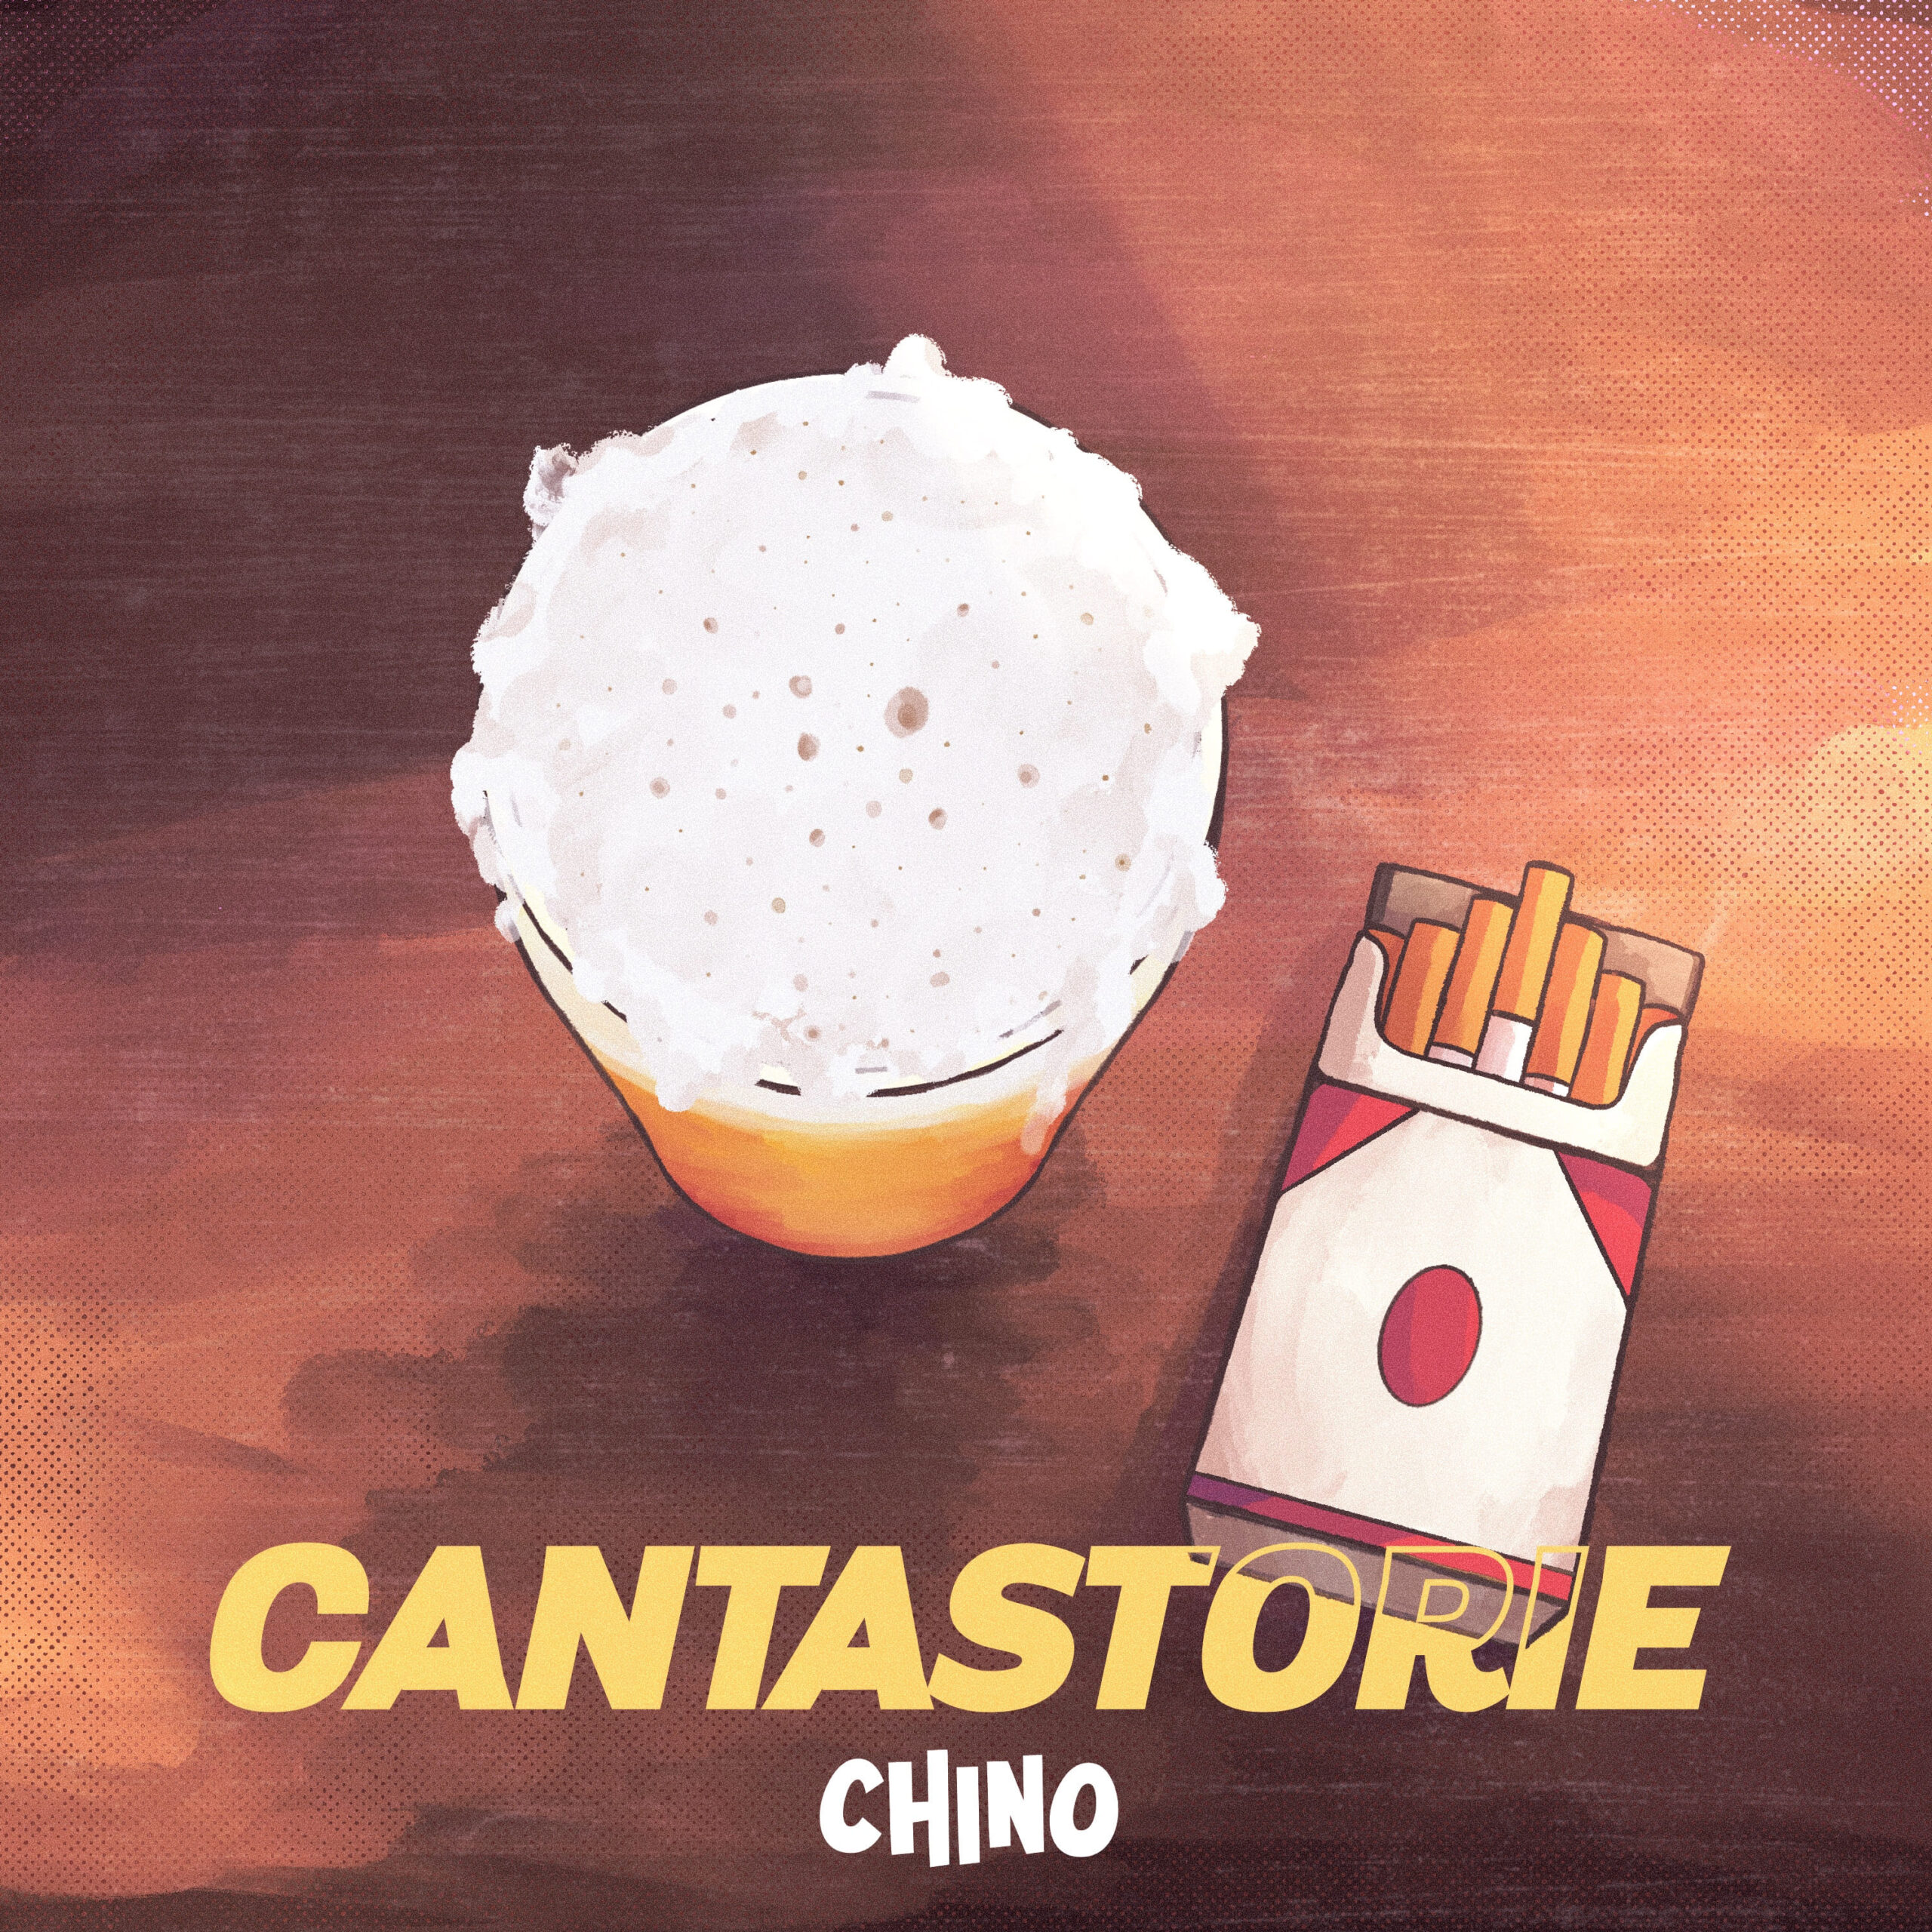 In radioda venerdì 26 gennaio “Cantastorie il nuovo singolo del musicista romano Chino